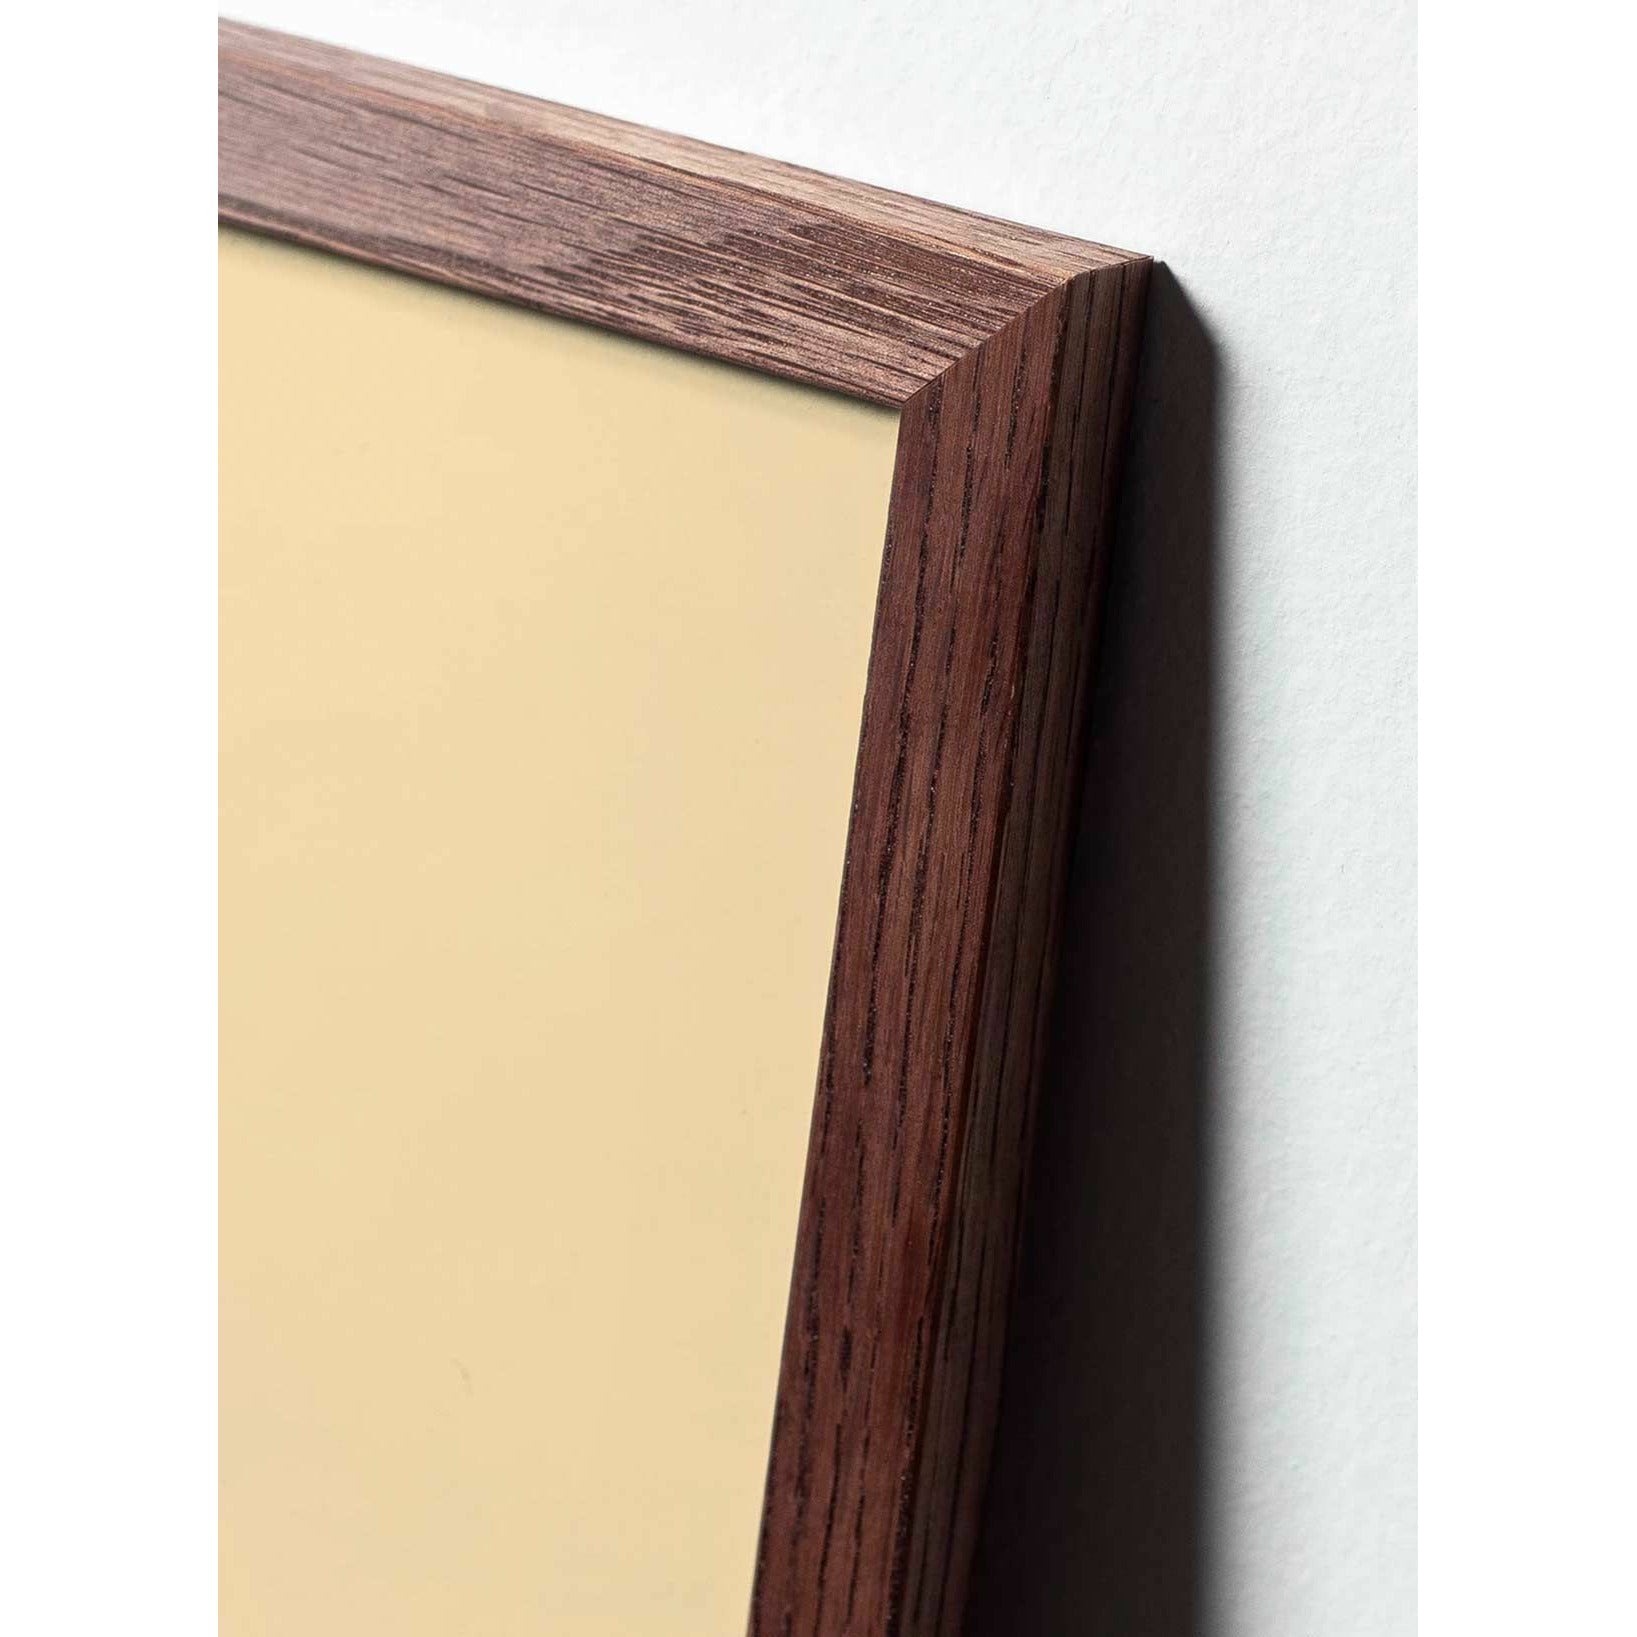 Plakát vejce z mozku, rám vyrobený z tmavého dřeva 50x70 cm, hnědý